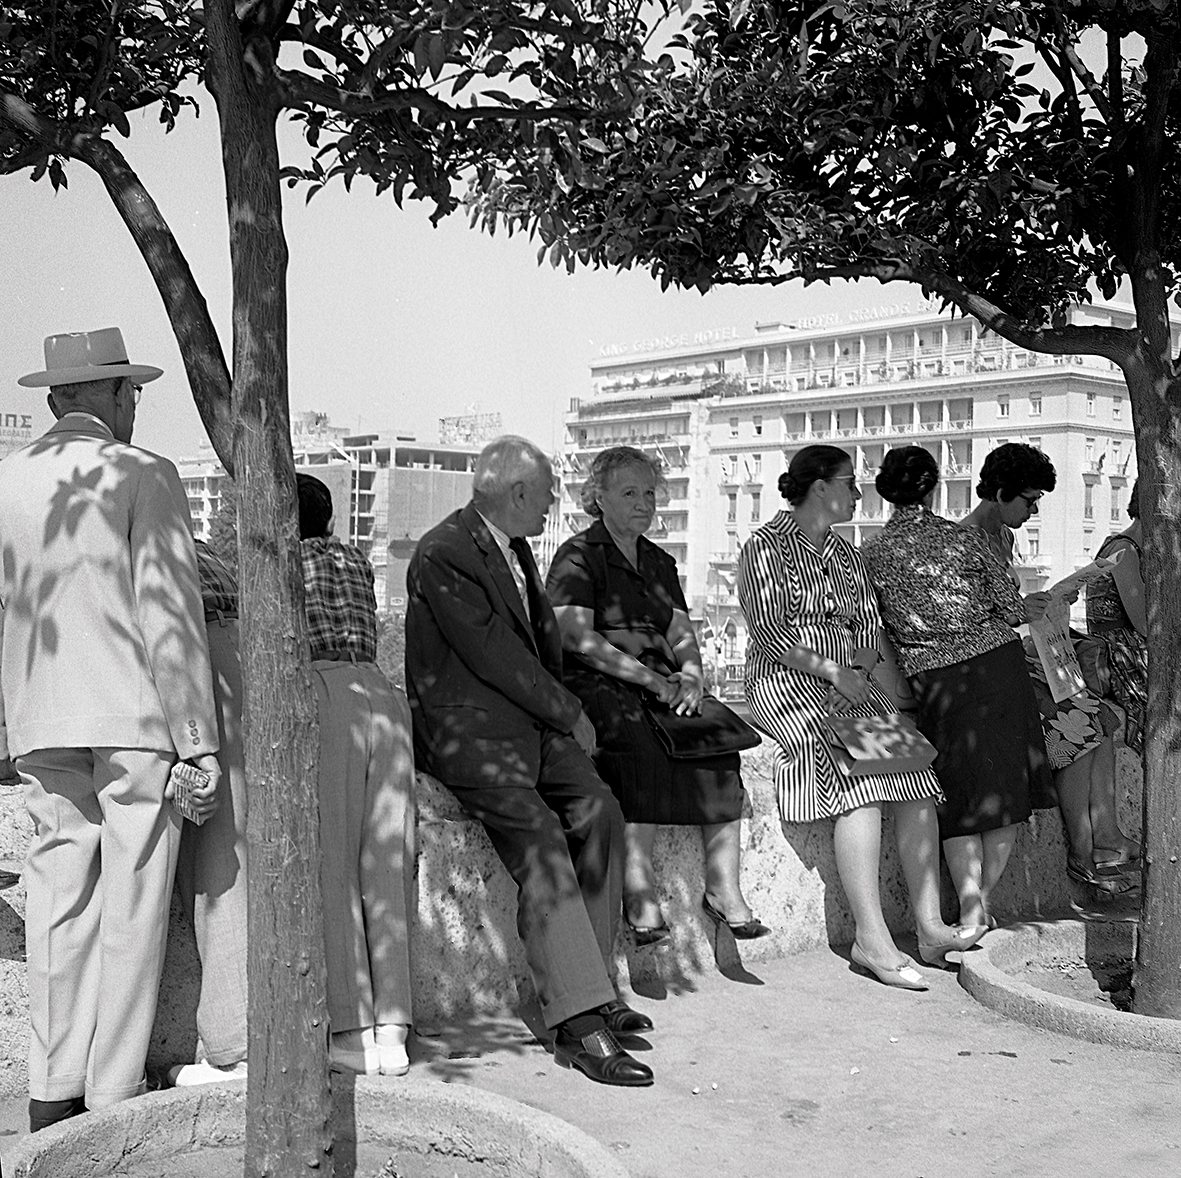 Η Αθήνα των 60s μέσα από 10 φωτογραφίες! Όπως την απαθανάτισε η Κατερίνα Ζωιτοπούλου - Μαυροκεφαλίδου